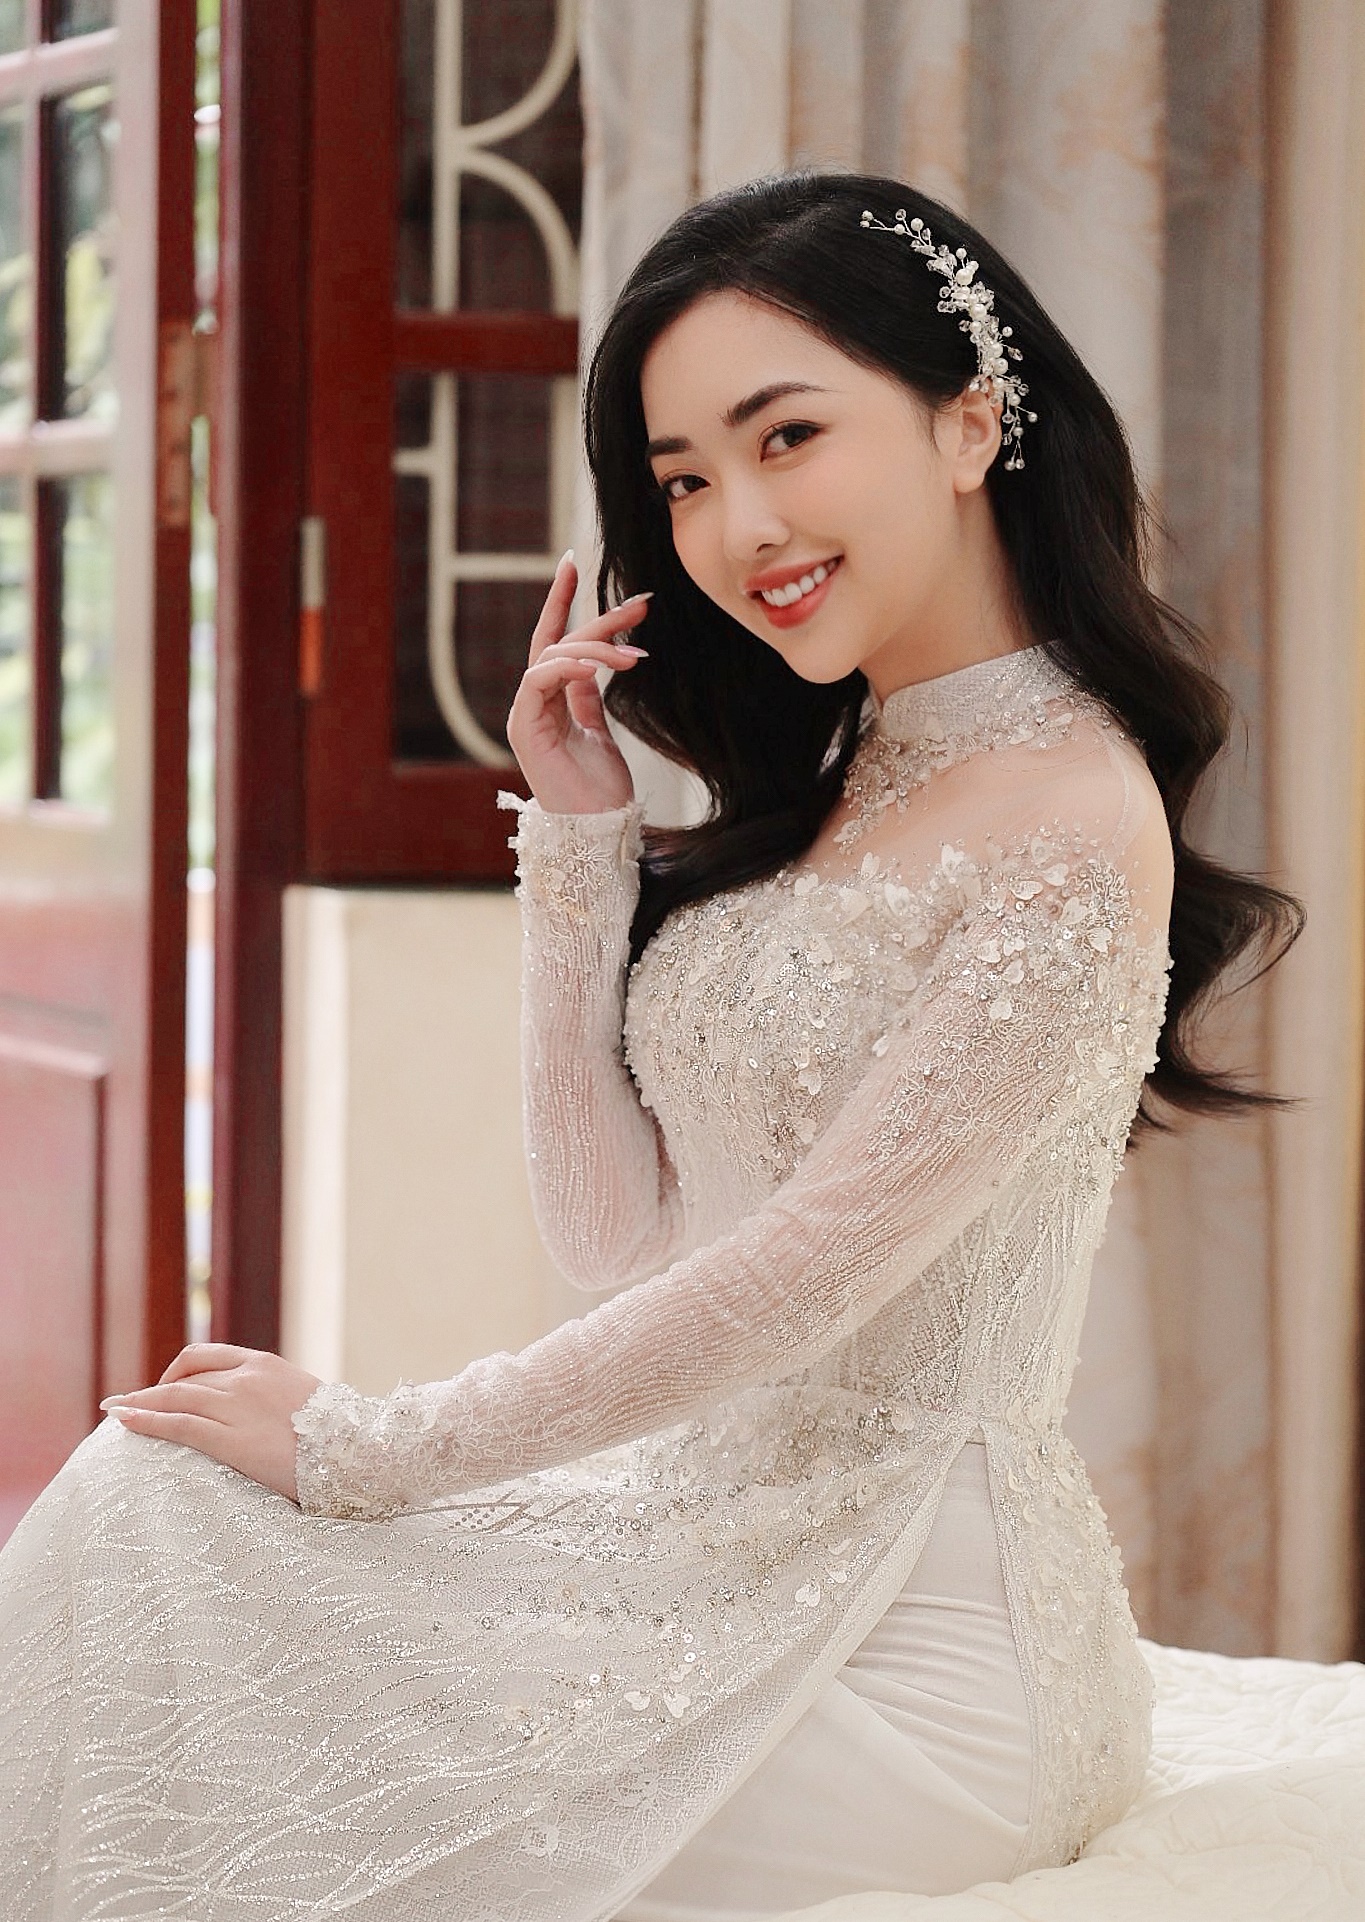 Cận cảnh nhan sắc cô dâu của Hà Đức Chinh: xinh đẹp không thua kém ai, đặc biệt đời sống cực kín tiếng